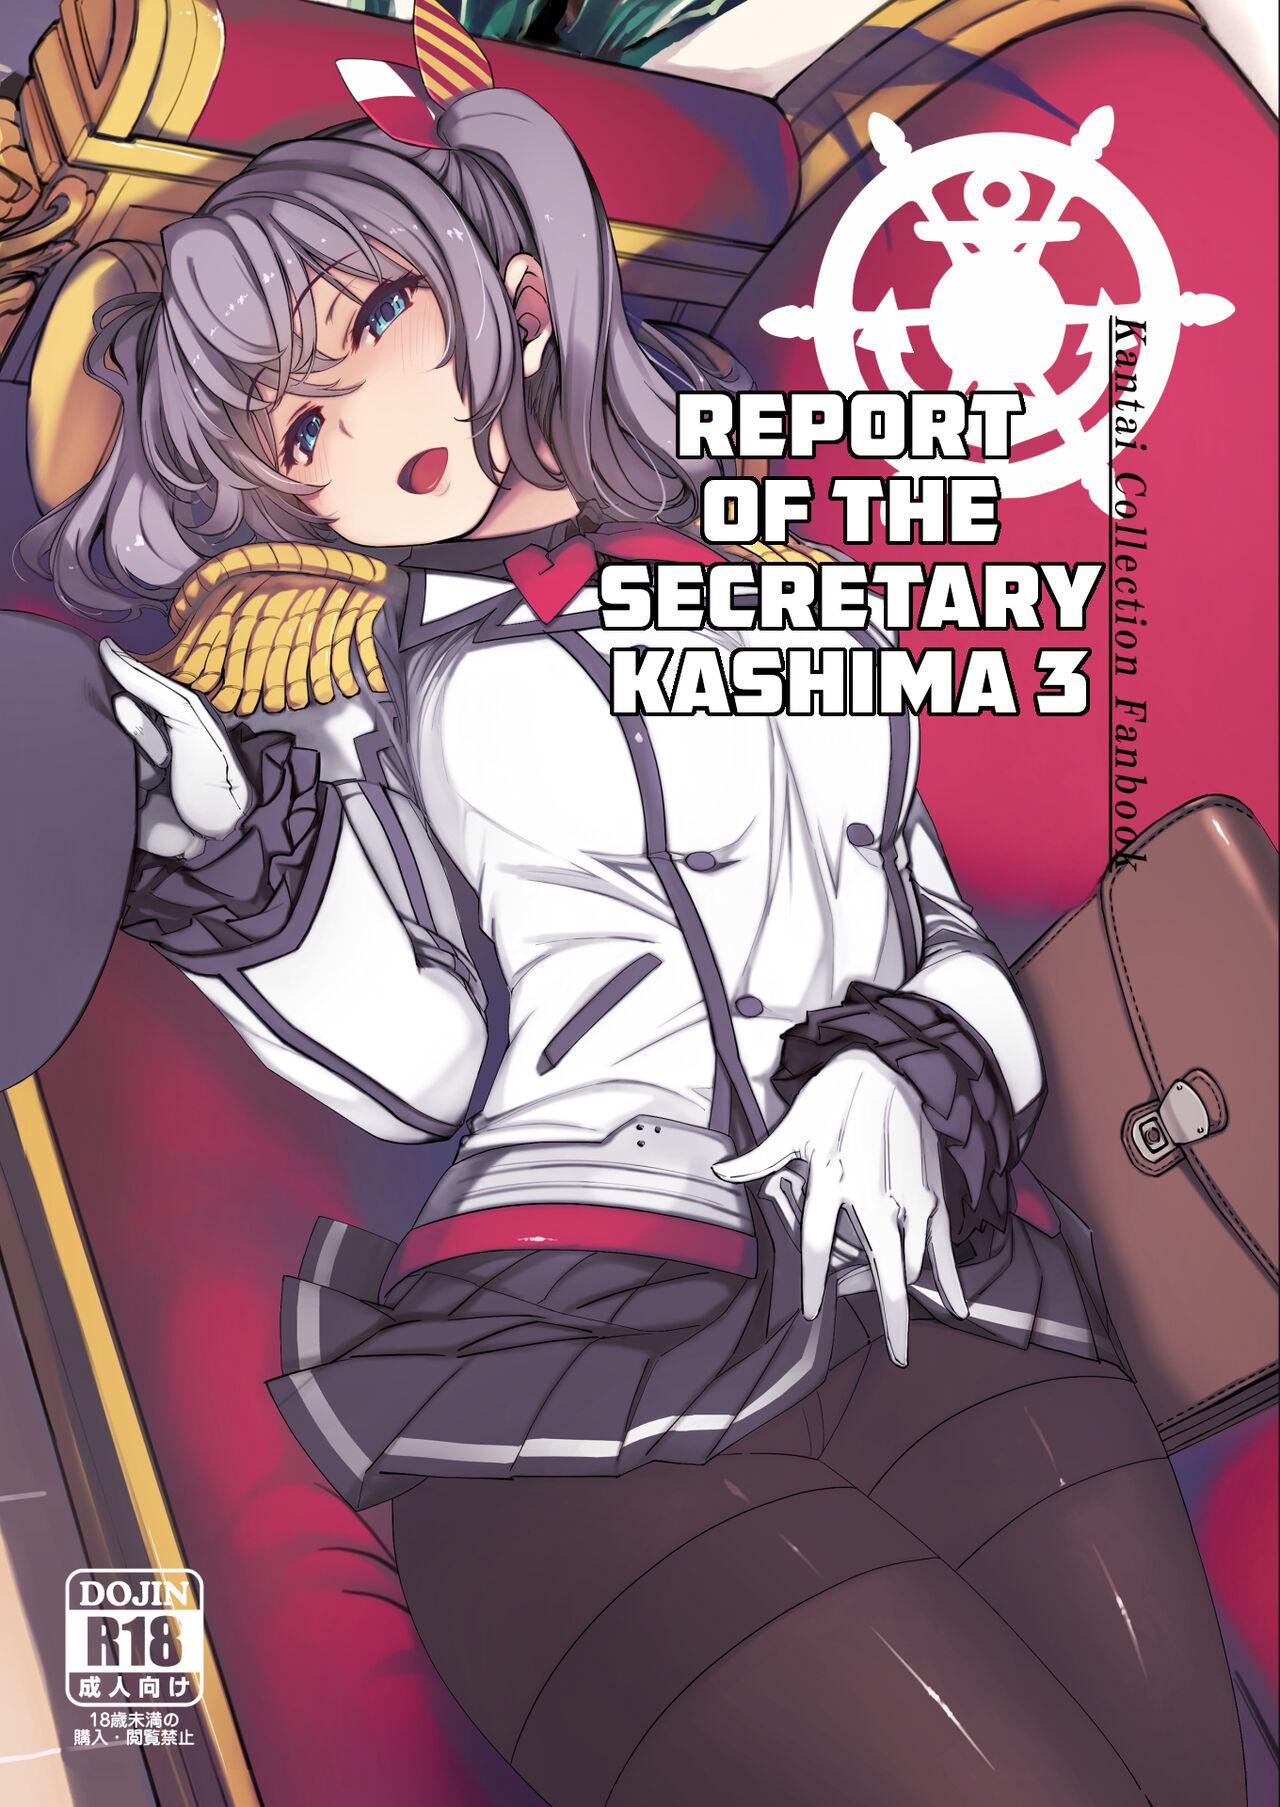 Hishokan Kashima no Houkokusho 3 | Report of the Secretary Kashima 3 0